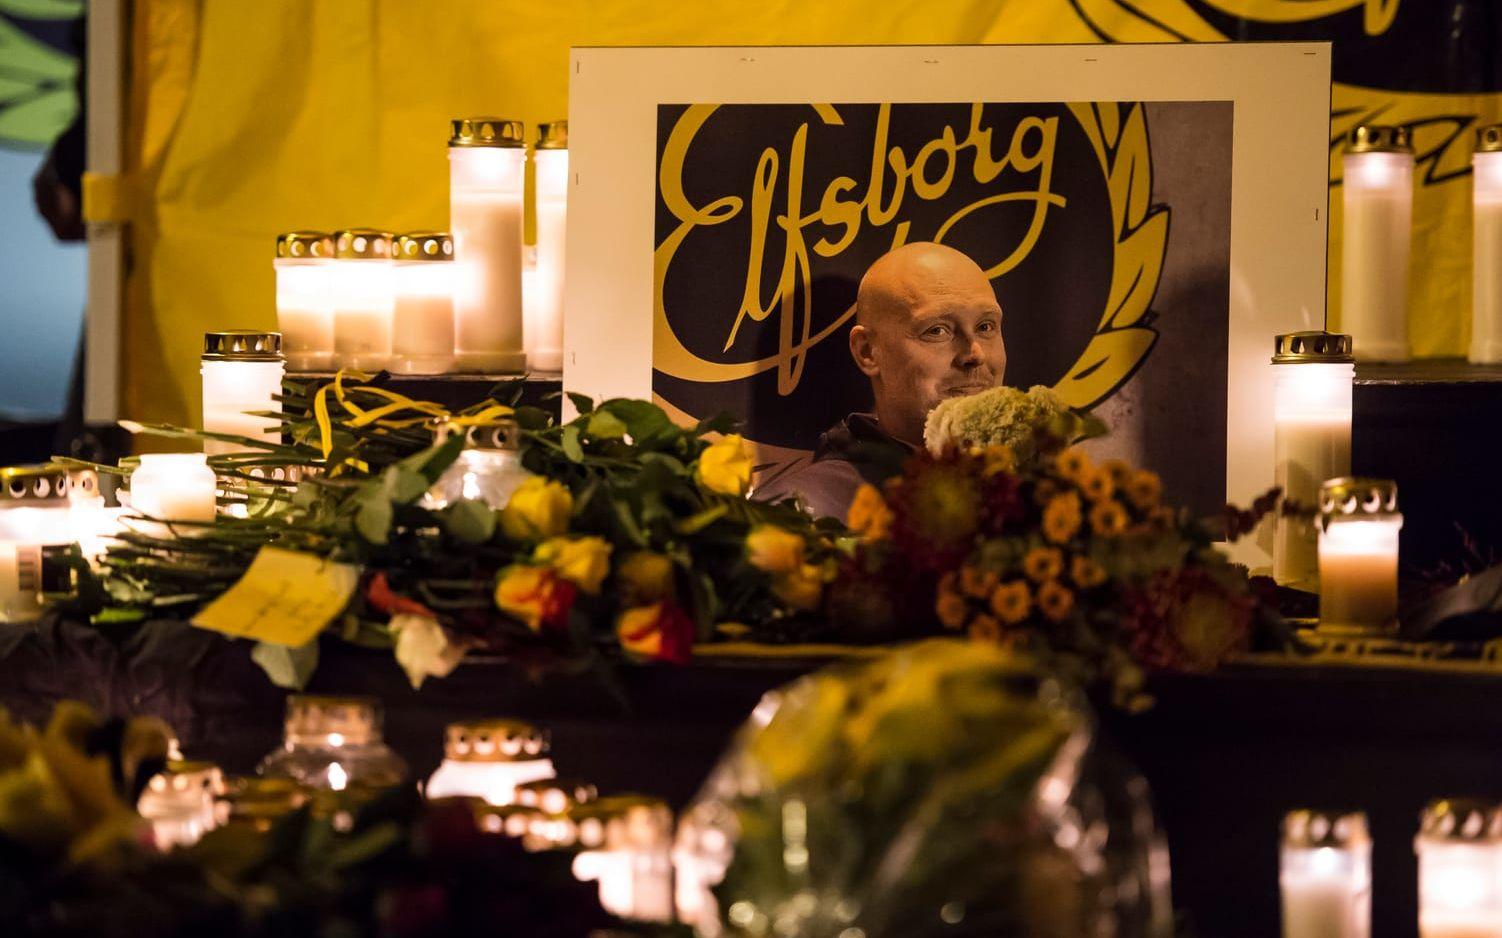 Den 29 oktober 2014 sörjde hela Sverige Klas Ingessons bortgång i sviterna av cancer. Ingesson var, trots sin sjukdom, tränare i Elfsborg ända in på det sista året av sitt liv. Hyllades stort, inte bara i Sverige, utan även i flera andra länder där han gjorde avtryck under sin imponerande karriär. Foto: Bildbyrån